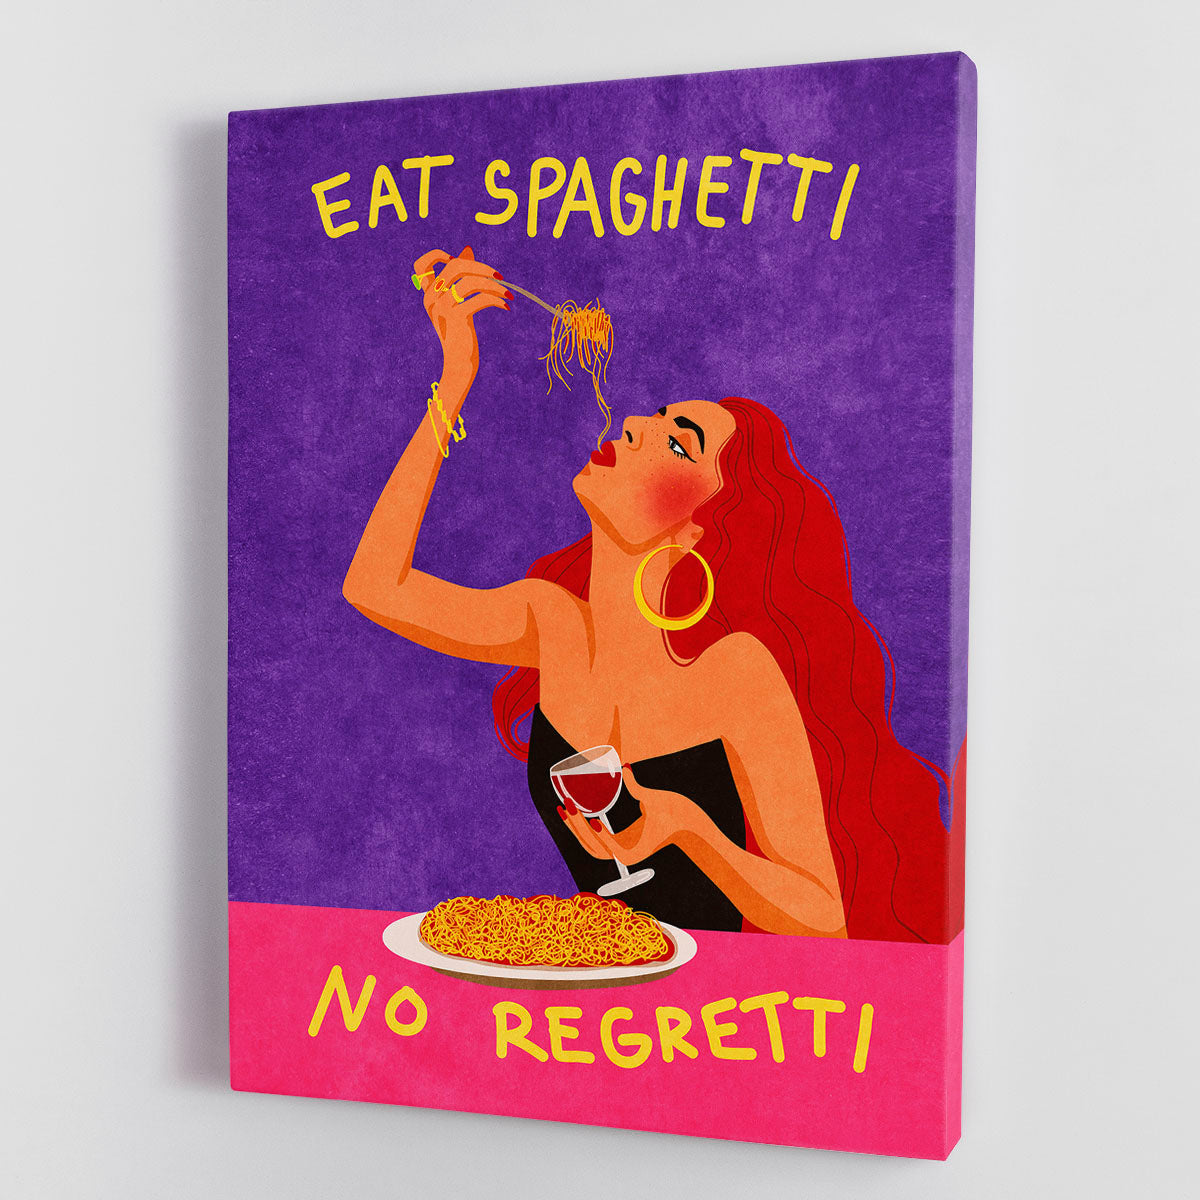 Eat spaghetti no regretti Canvas Print or Poster - Canvas Art Rocks - 1